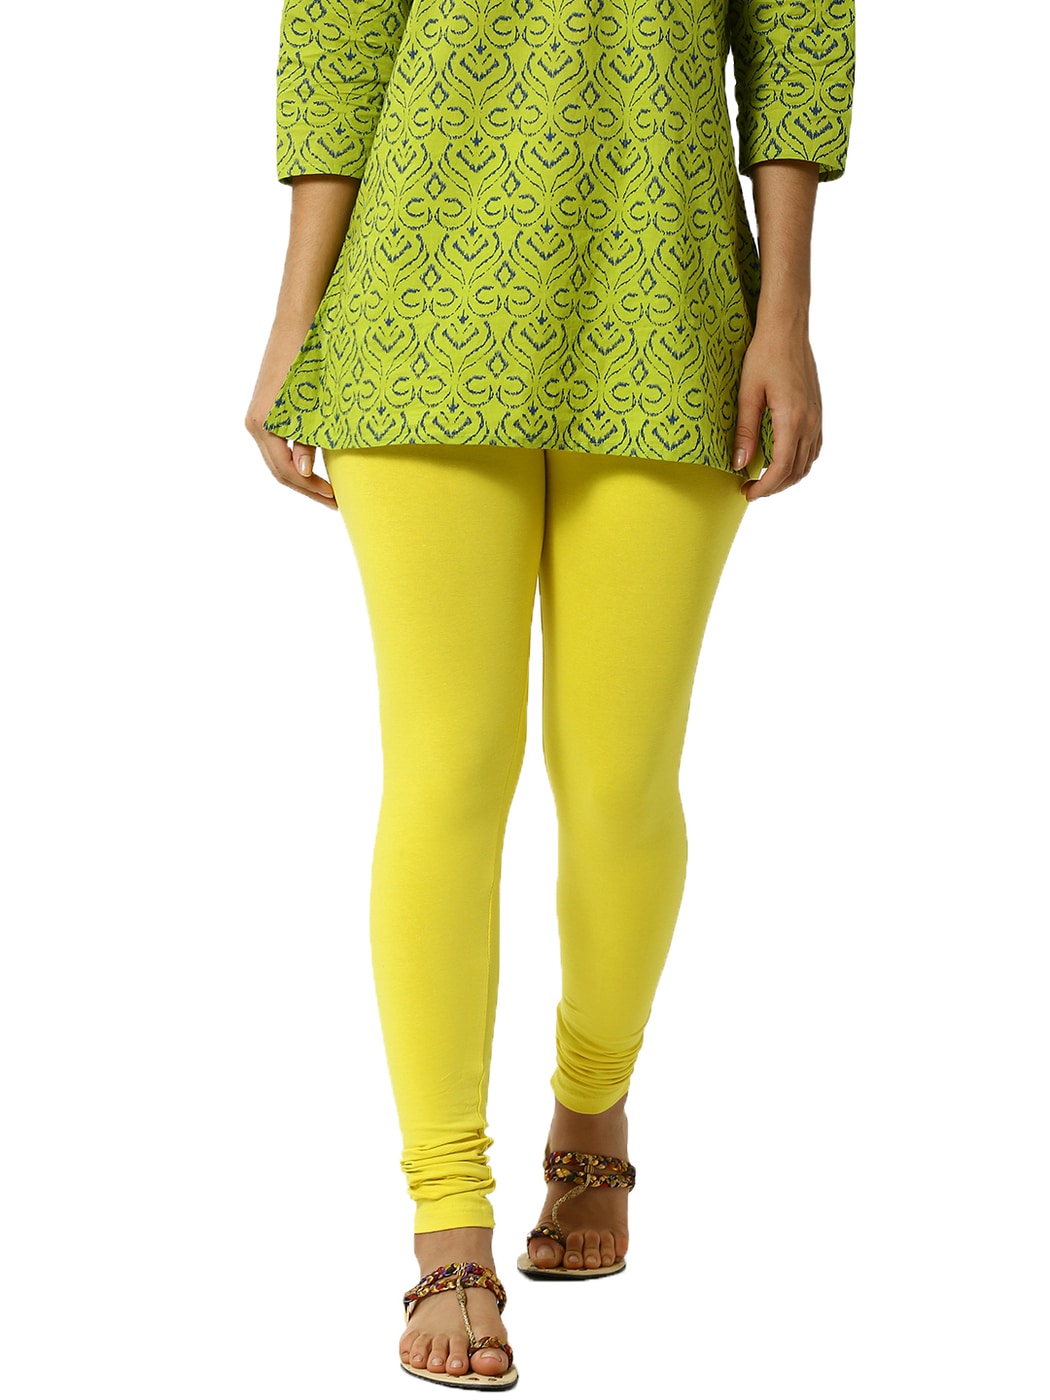 Buy Lemon Yellow Leggings for Women by De Moza Online